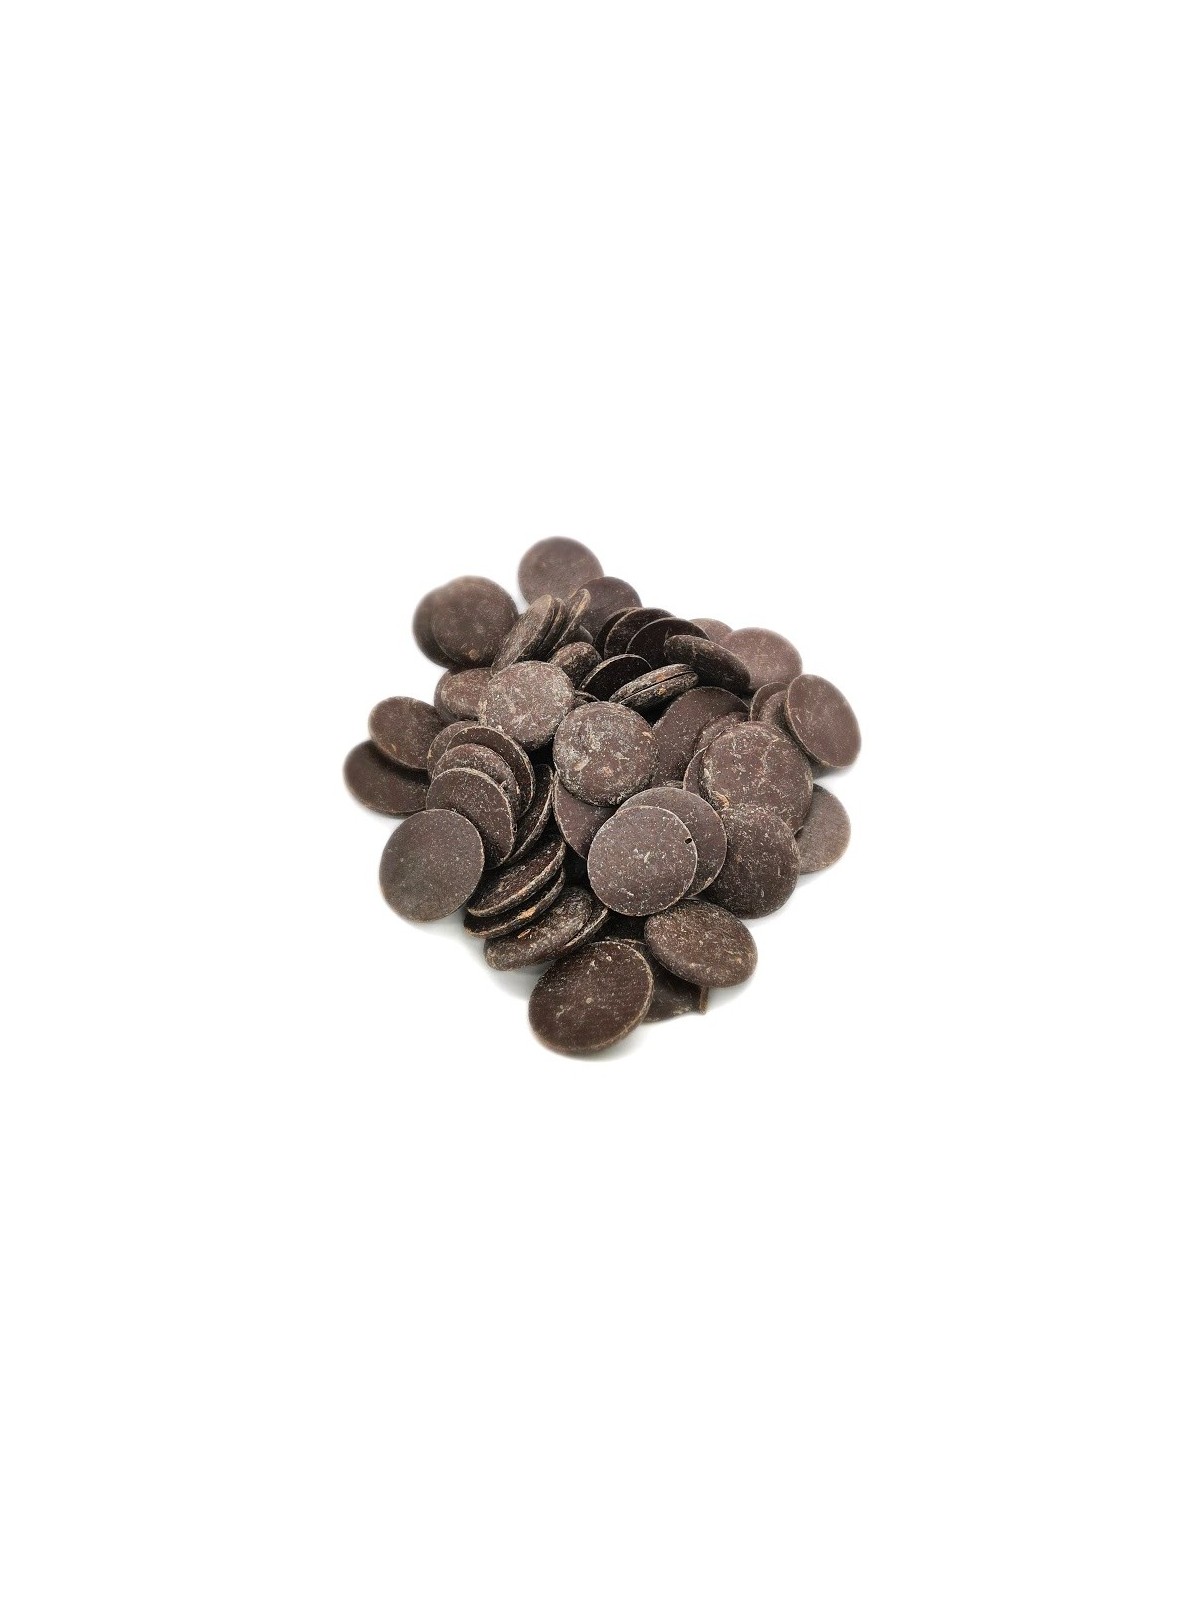 Horká čokoláda 70% pecky - dark discs - 500g